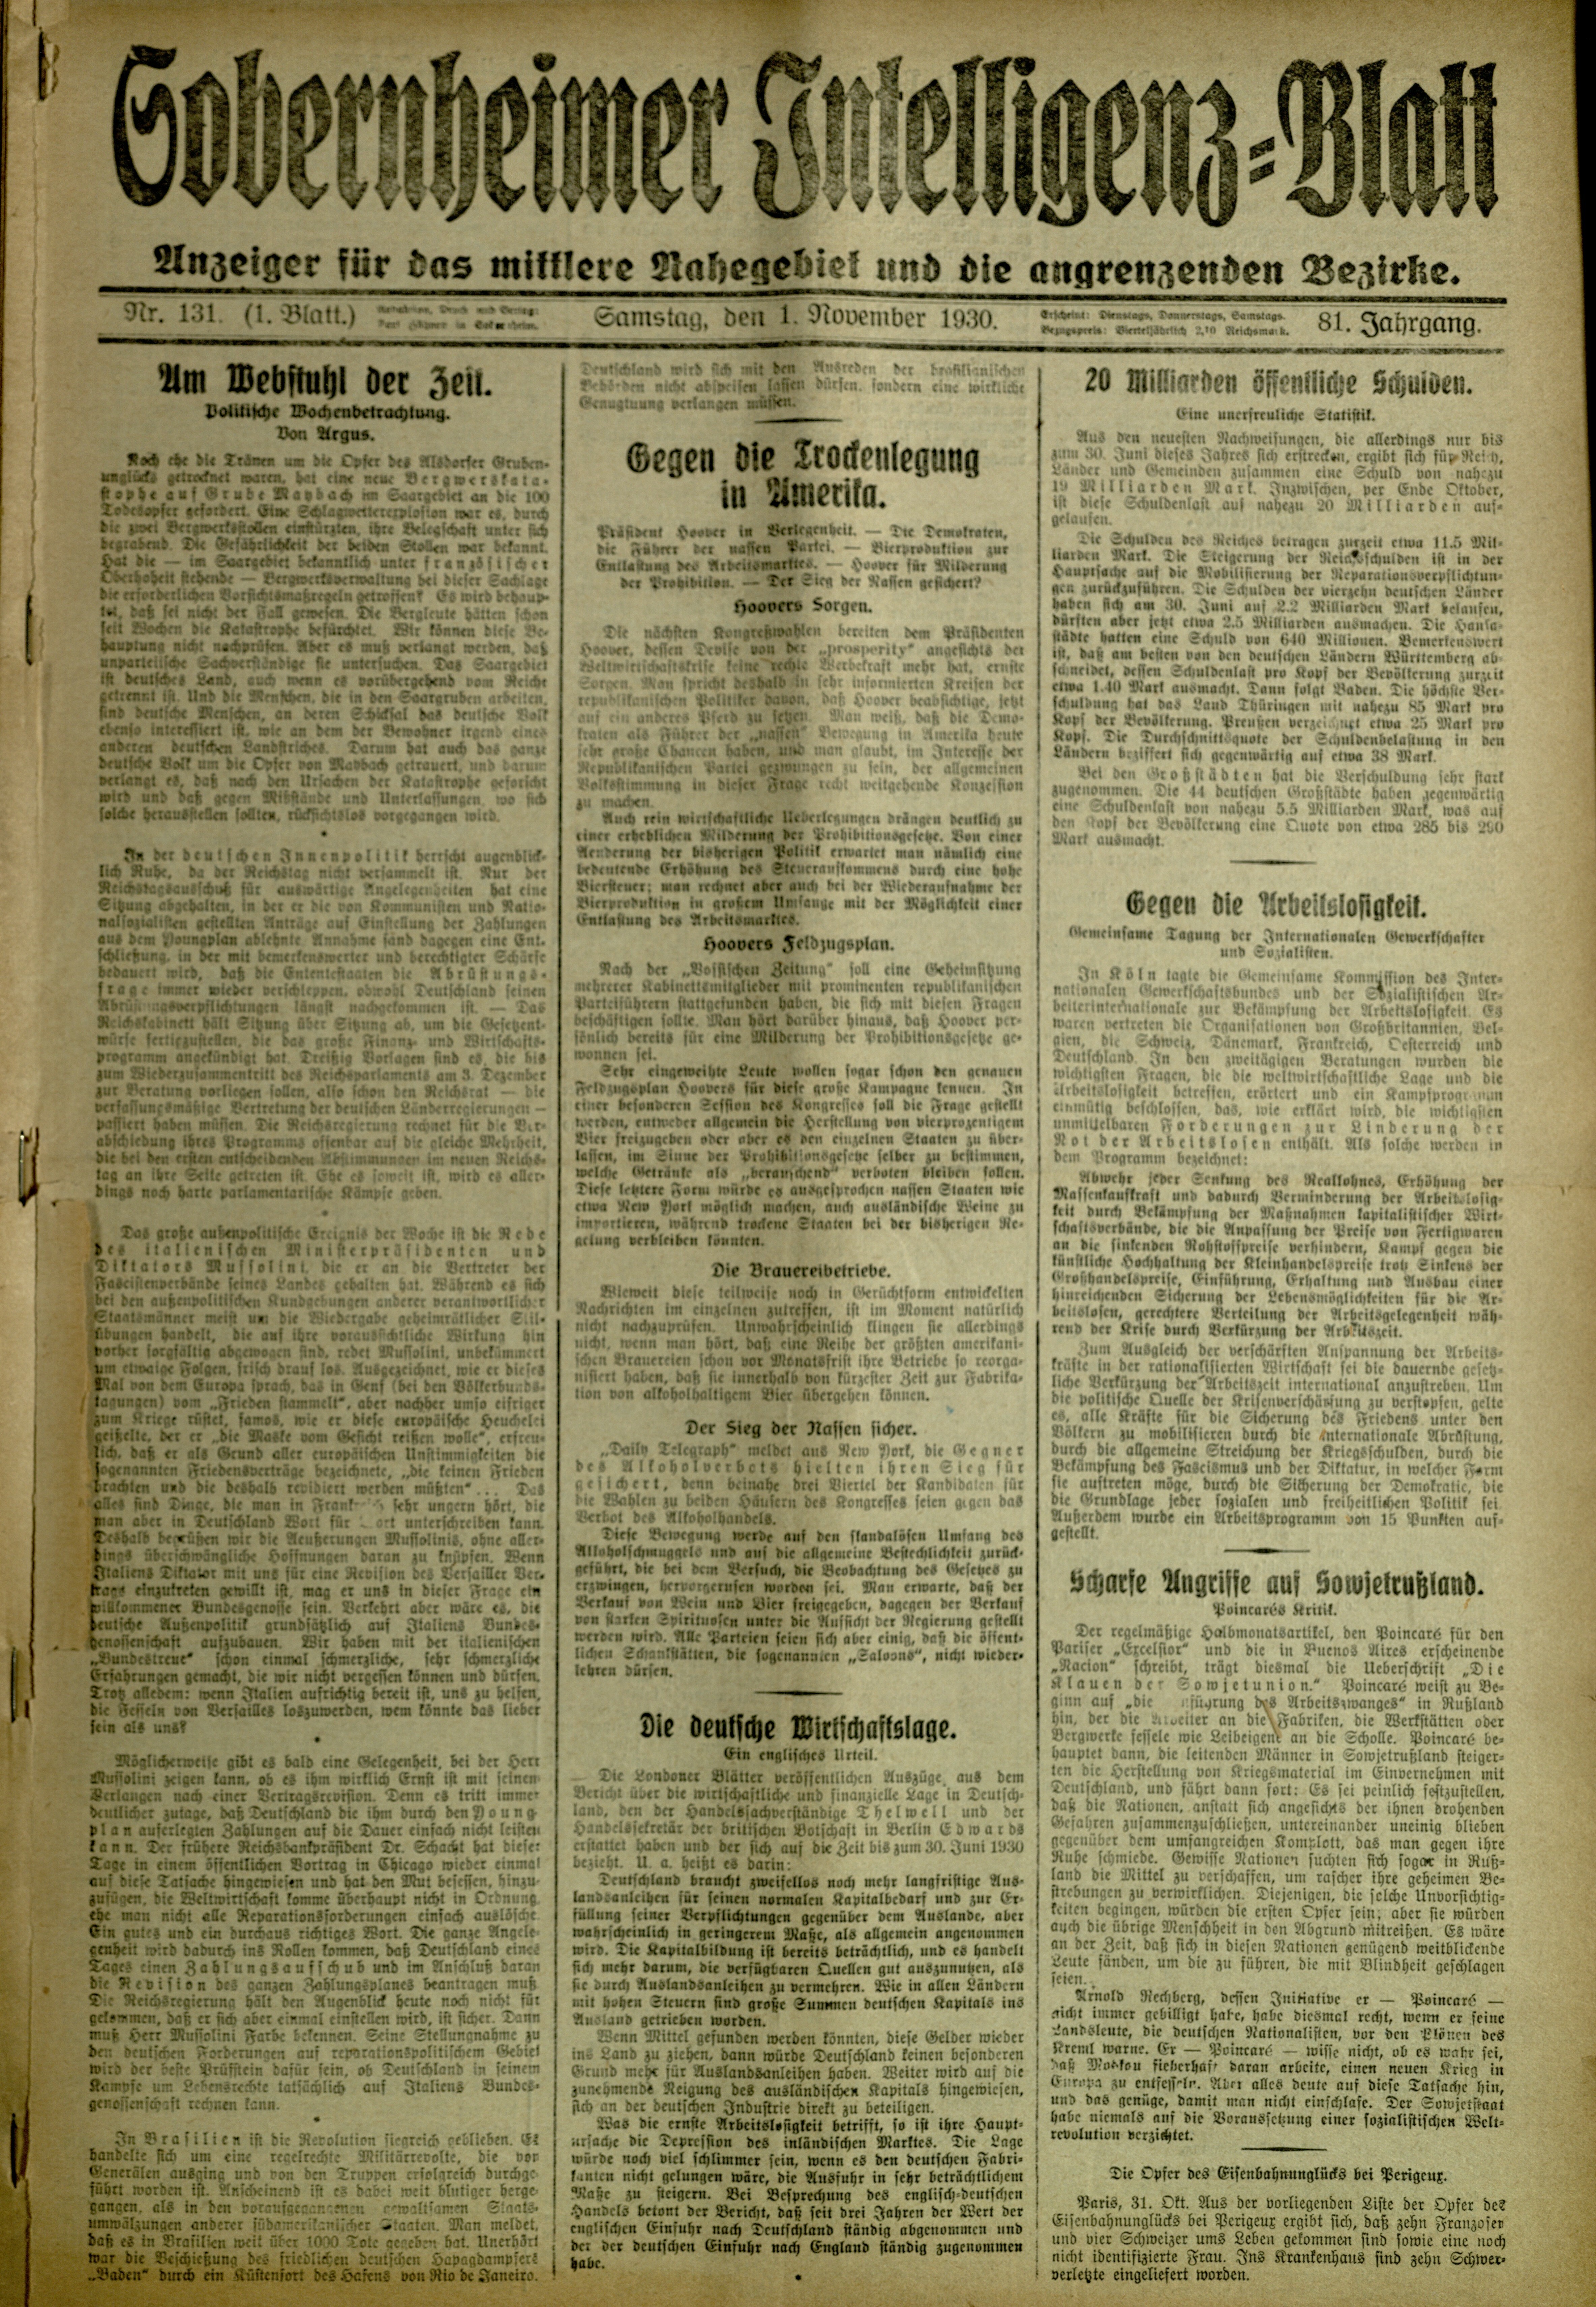 Zeitung: Sobernheimer Intelligenzblatt; November 1930, Jg. 81 Nr. 131 (Heimatmuseum Bad Sobernheim CC BY-NC-SA)